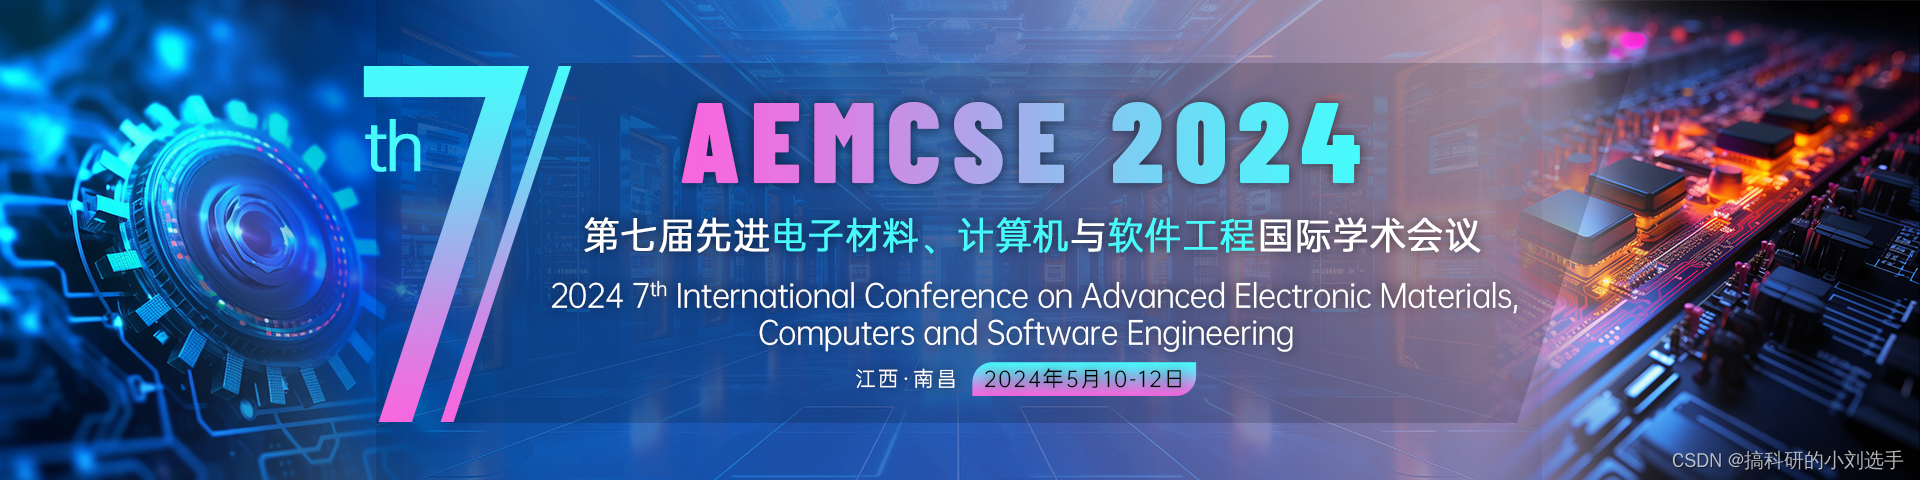 【EI会议征稿通知】第七届先进电子材料、计算机与软件工程国际学术会议(AEMCSE 2024）